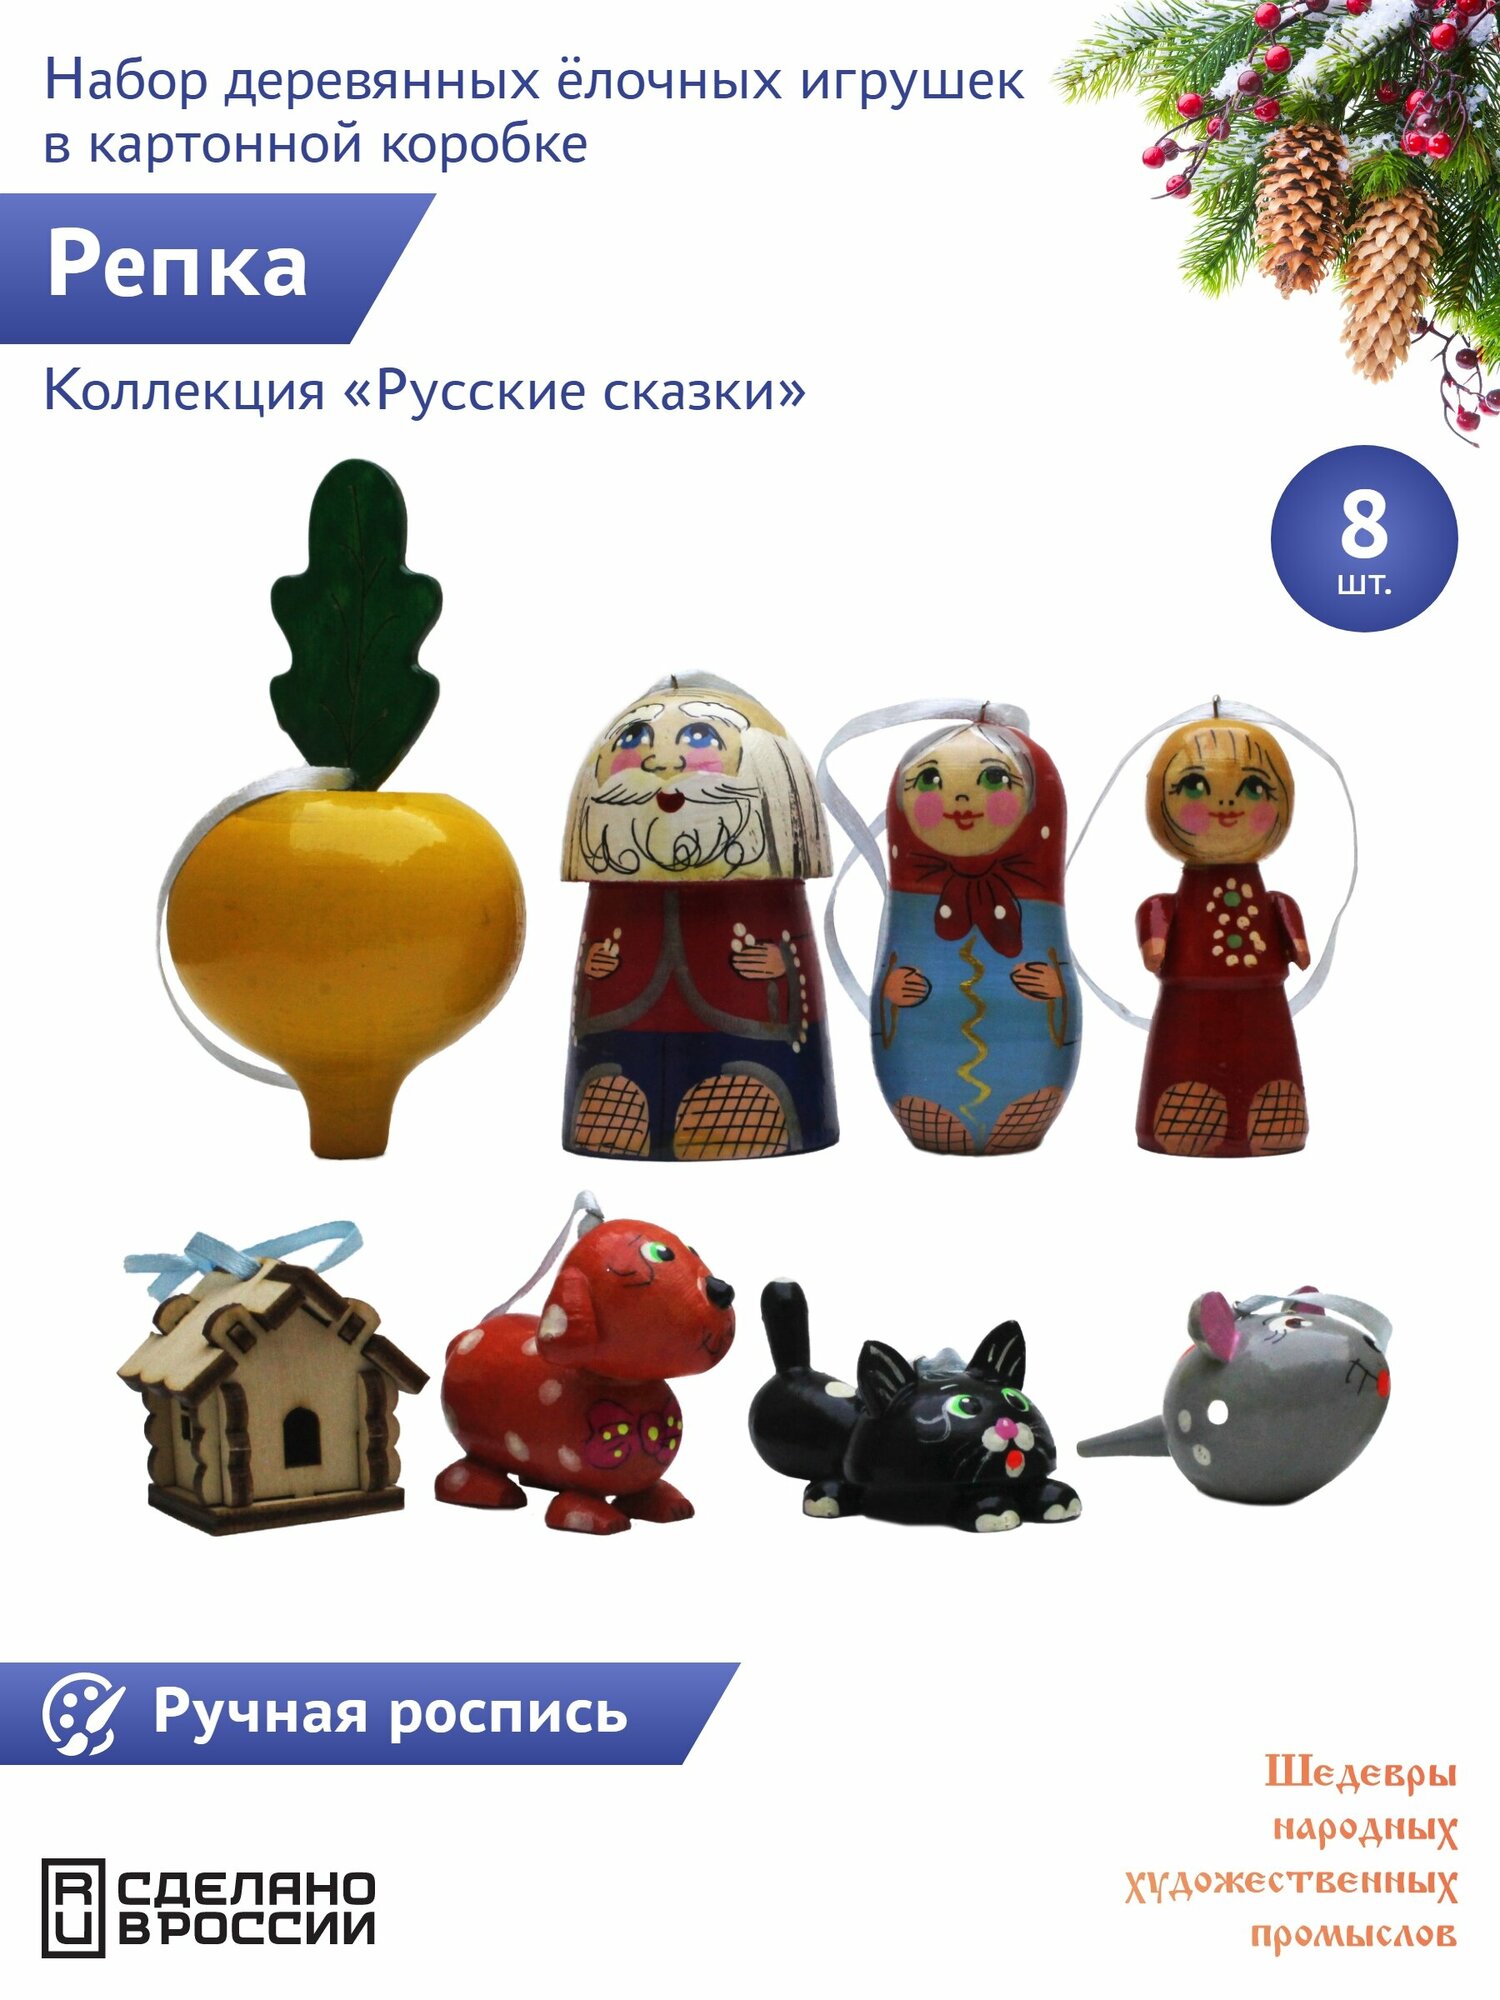 "Русские сказки: Репка" 8 штук Сказочный персонаж набор деревянных елочных игрушек в картонной коробке